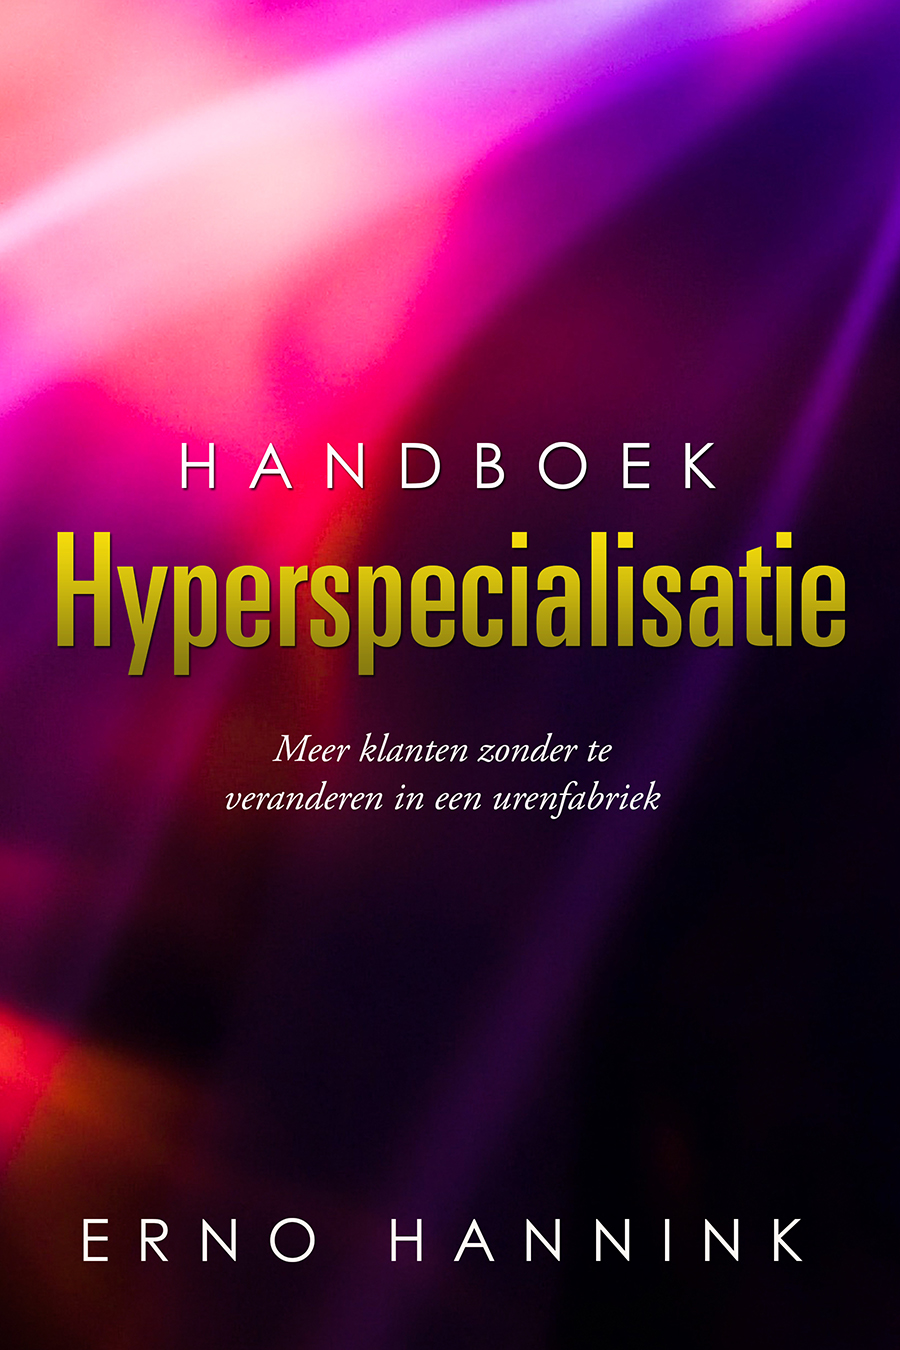 Handboek Hyperspecalisatie